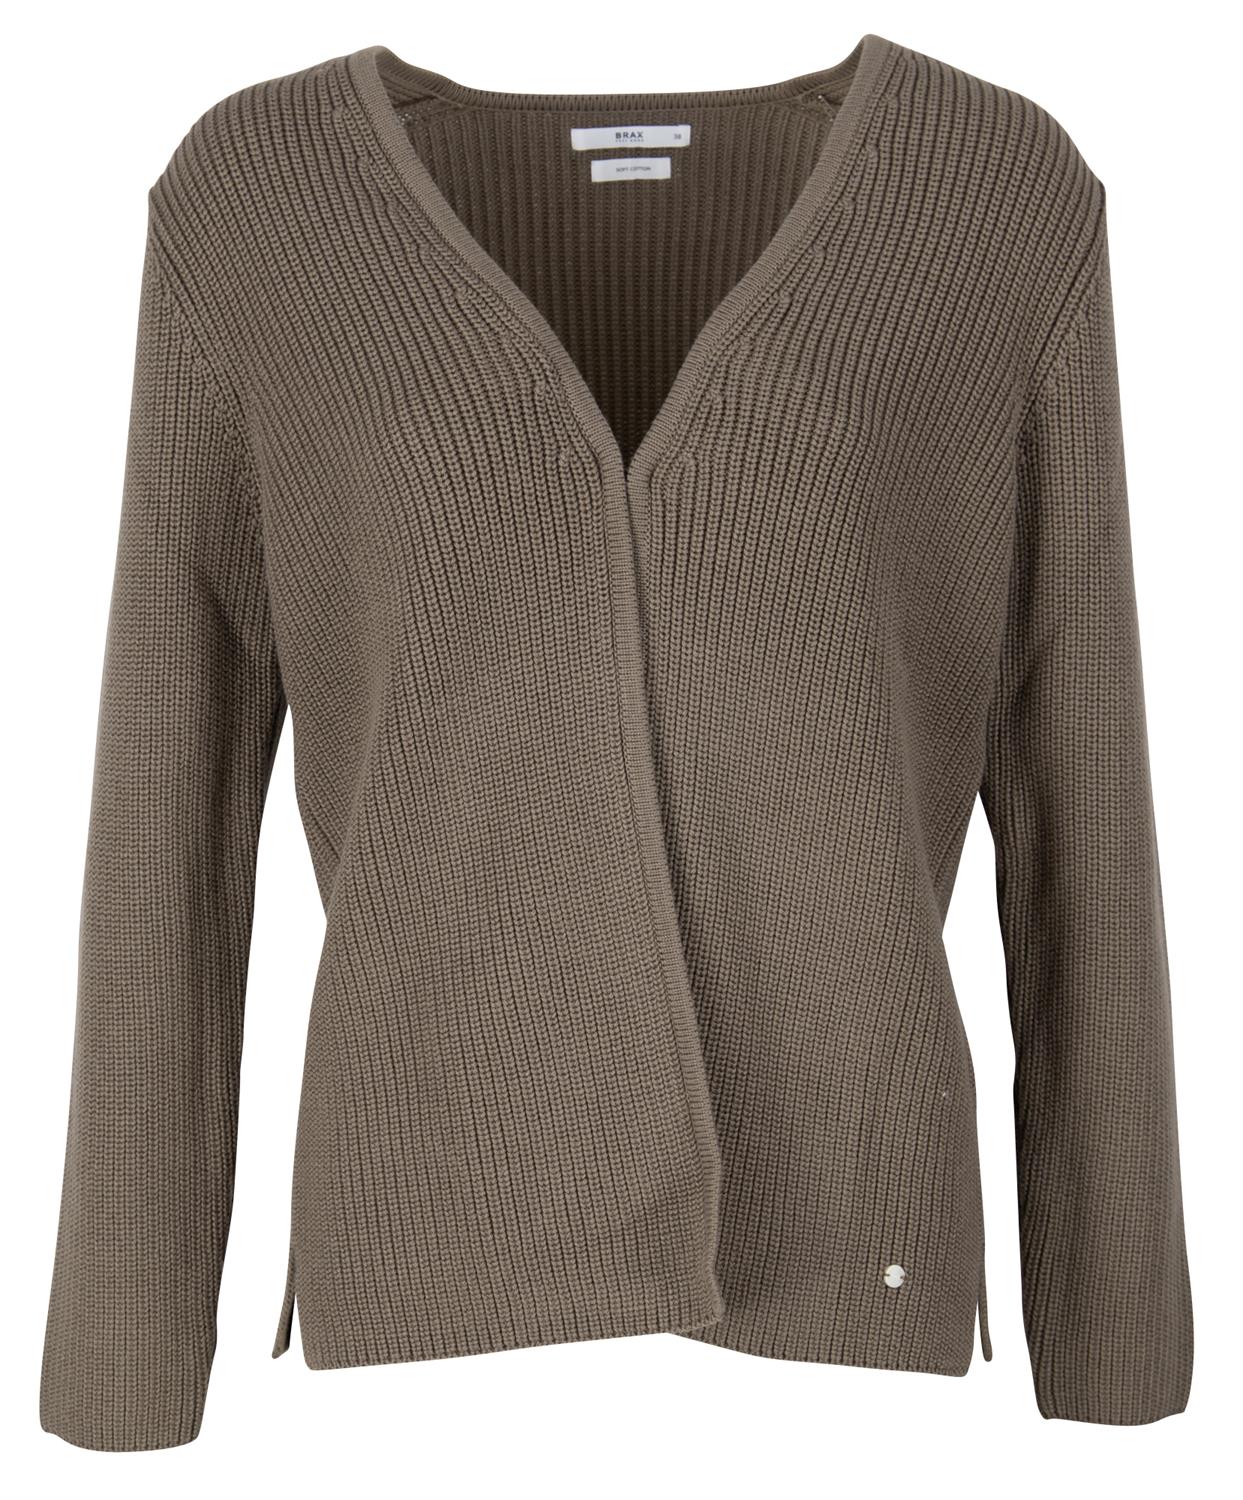 Brax Damen Pullover Style ANIQUE khaki bequem online kaufen bei